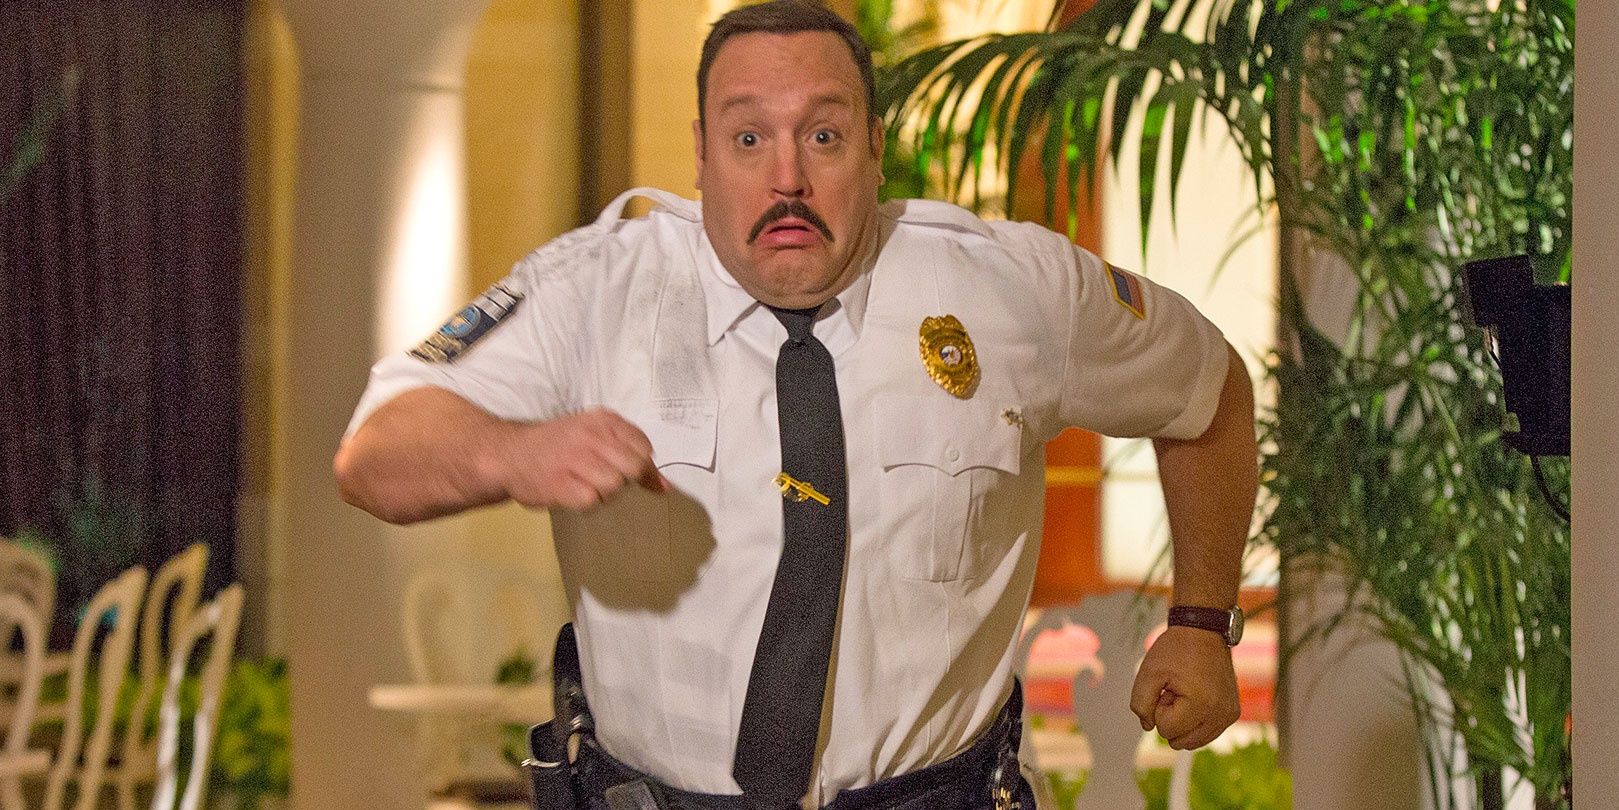 Paul Blart running in the Paul Blart Mall Cop movie.